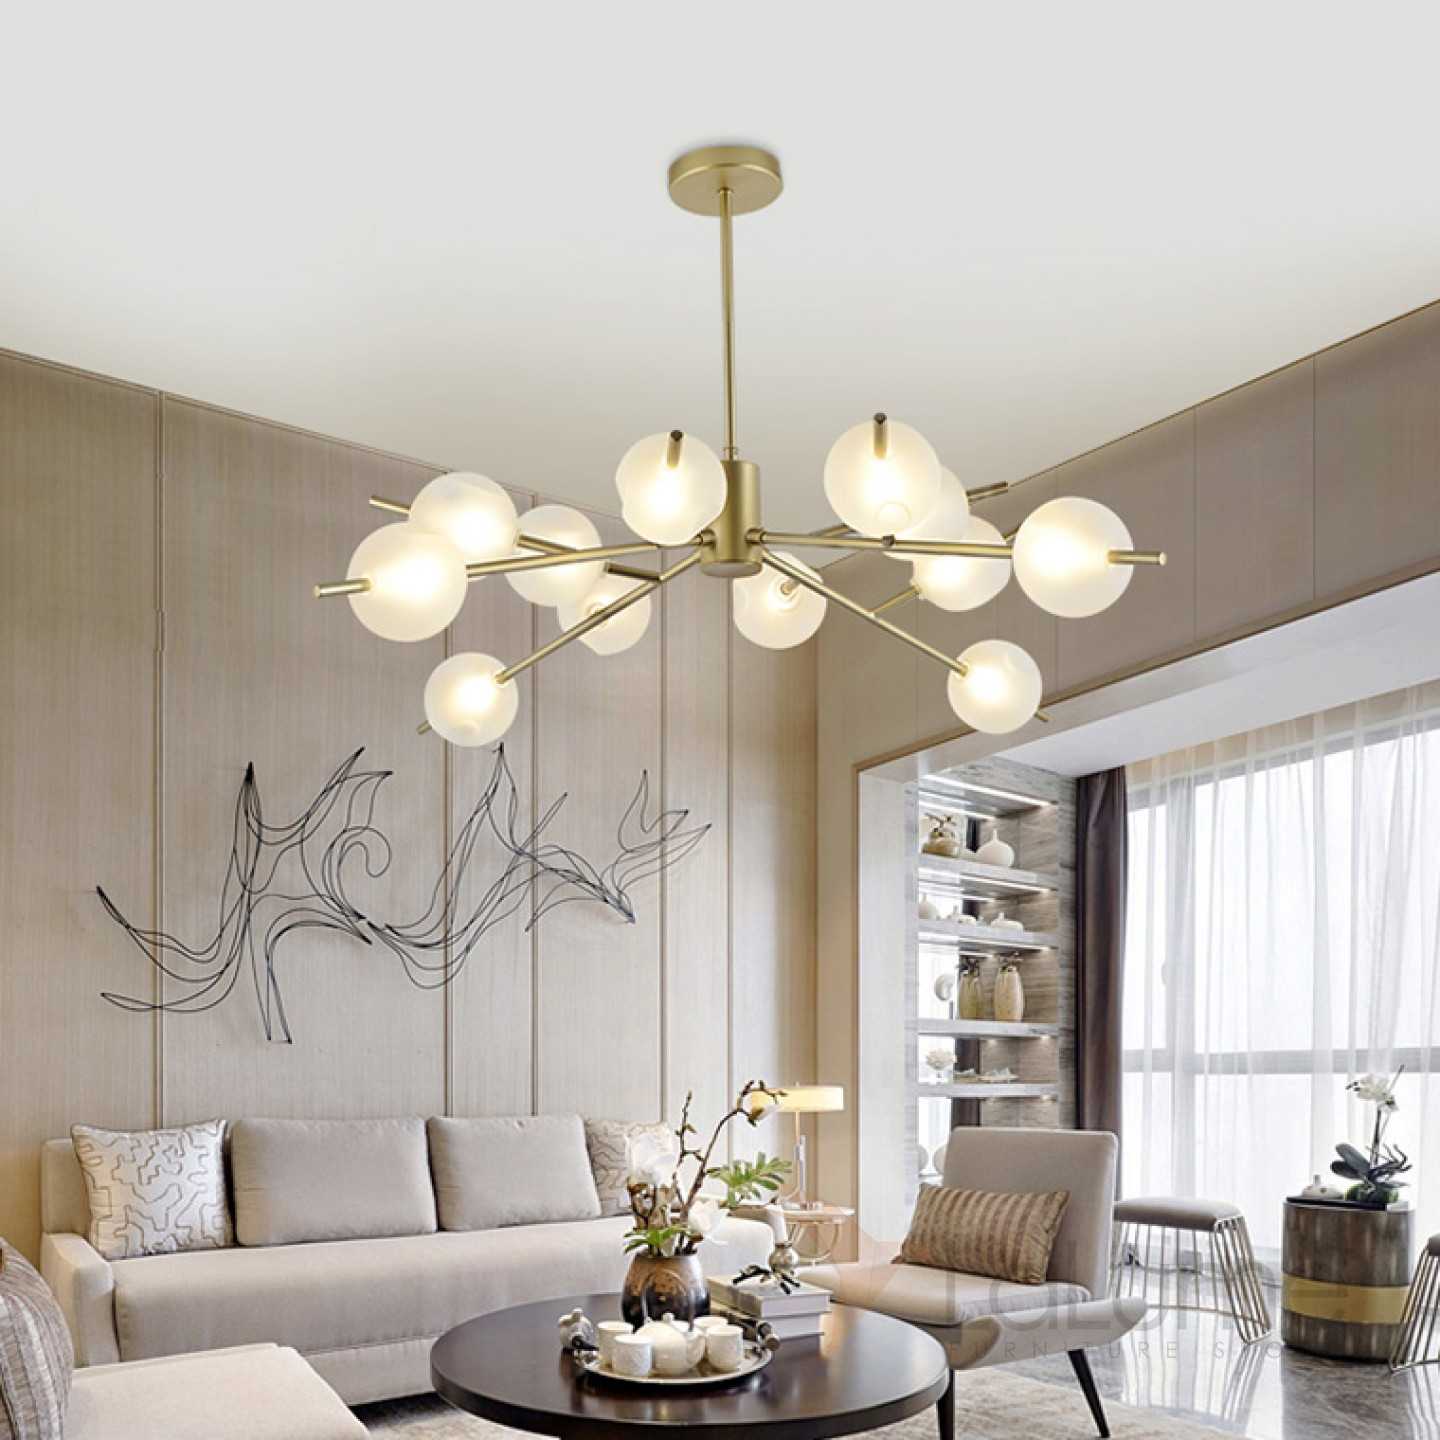 Люстры в интерьере квартиры, светильники потолочные в зал, красивые люстры в дизайне